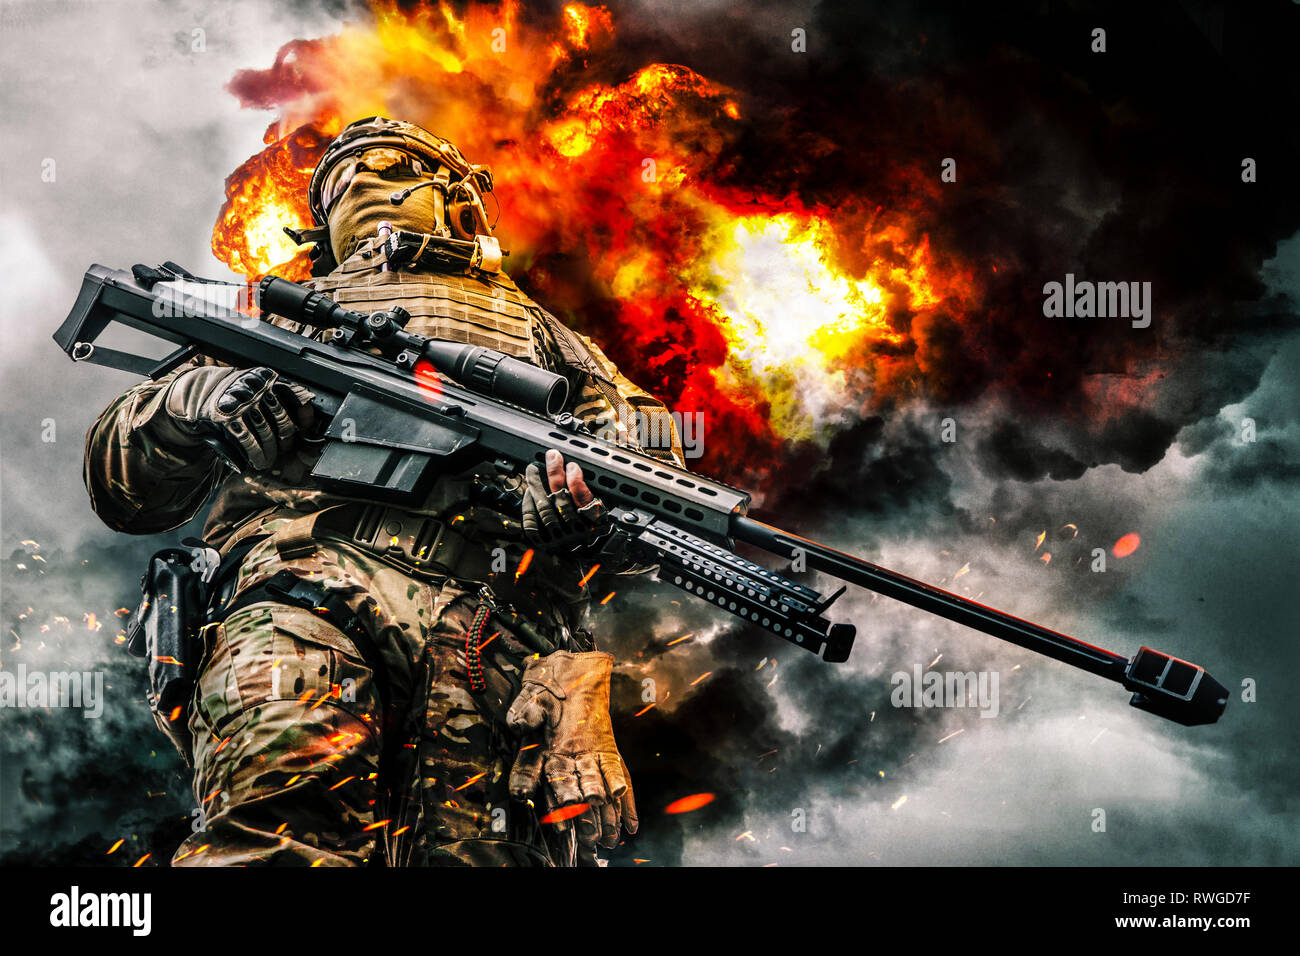 Low Angle View einer Armee Sniper mit großen Kaliber Gewehr und Explosionen im Hintergrund. Stockfoto